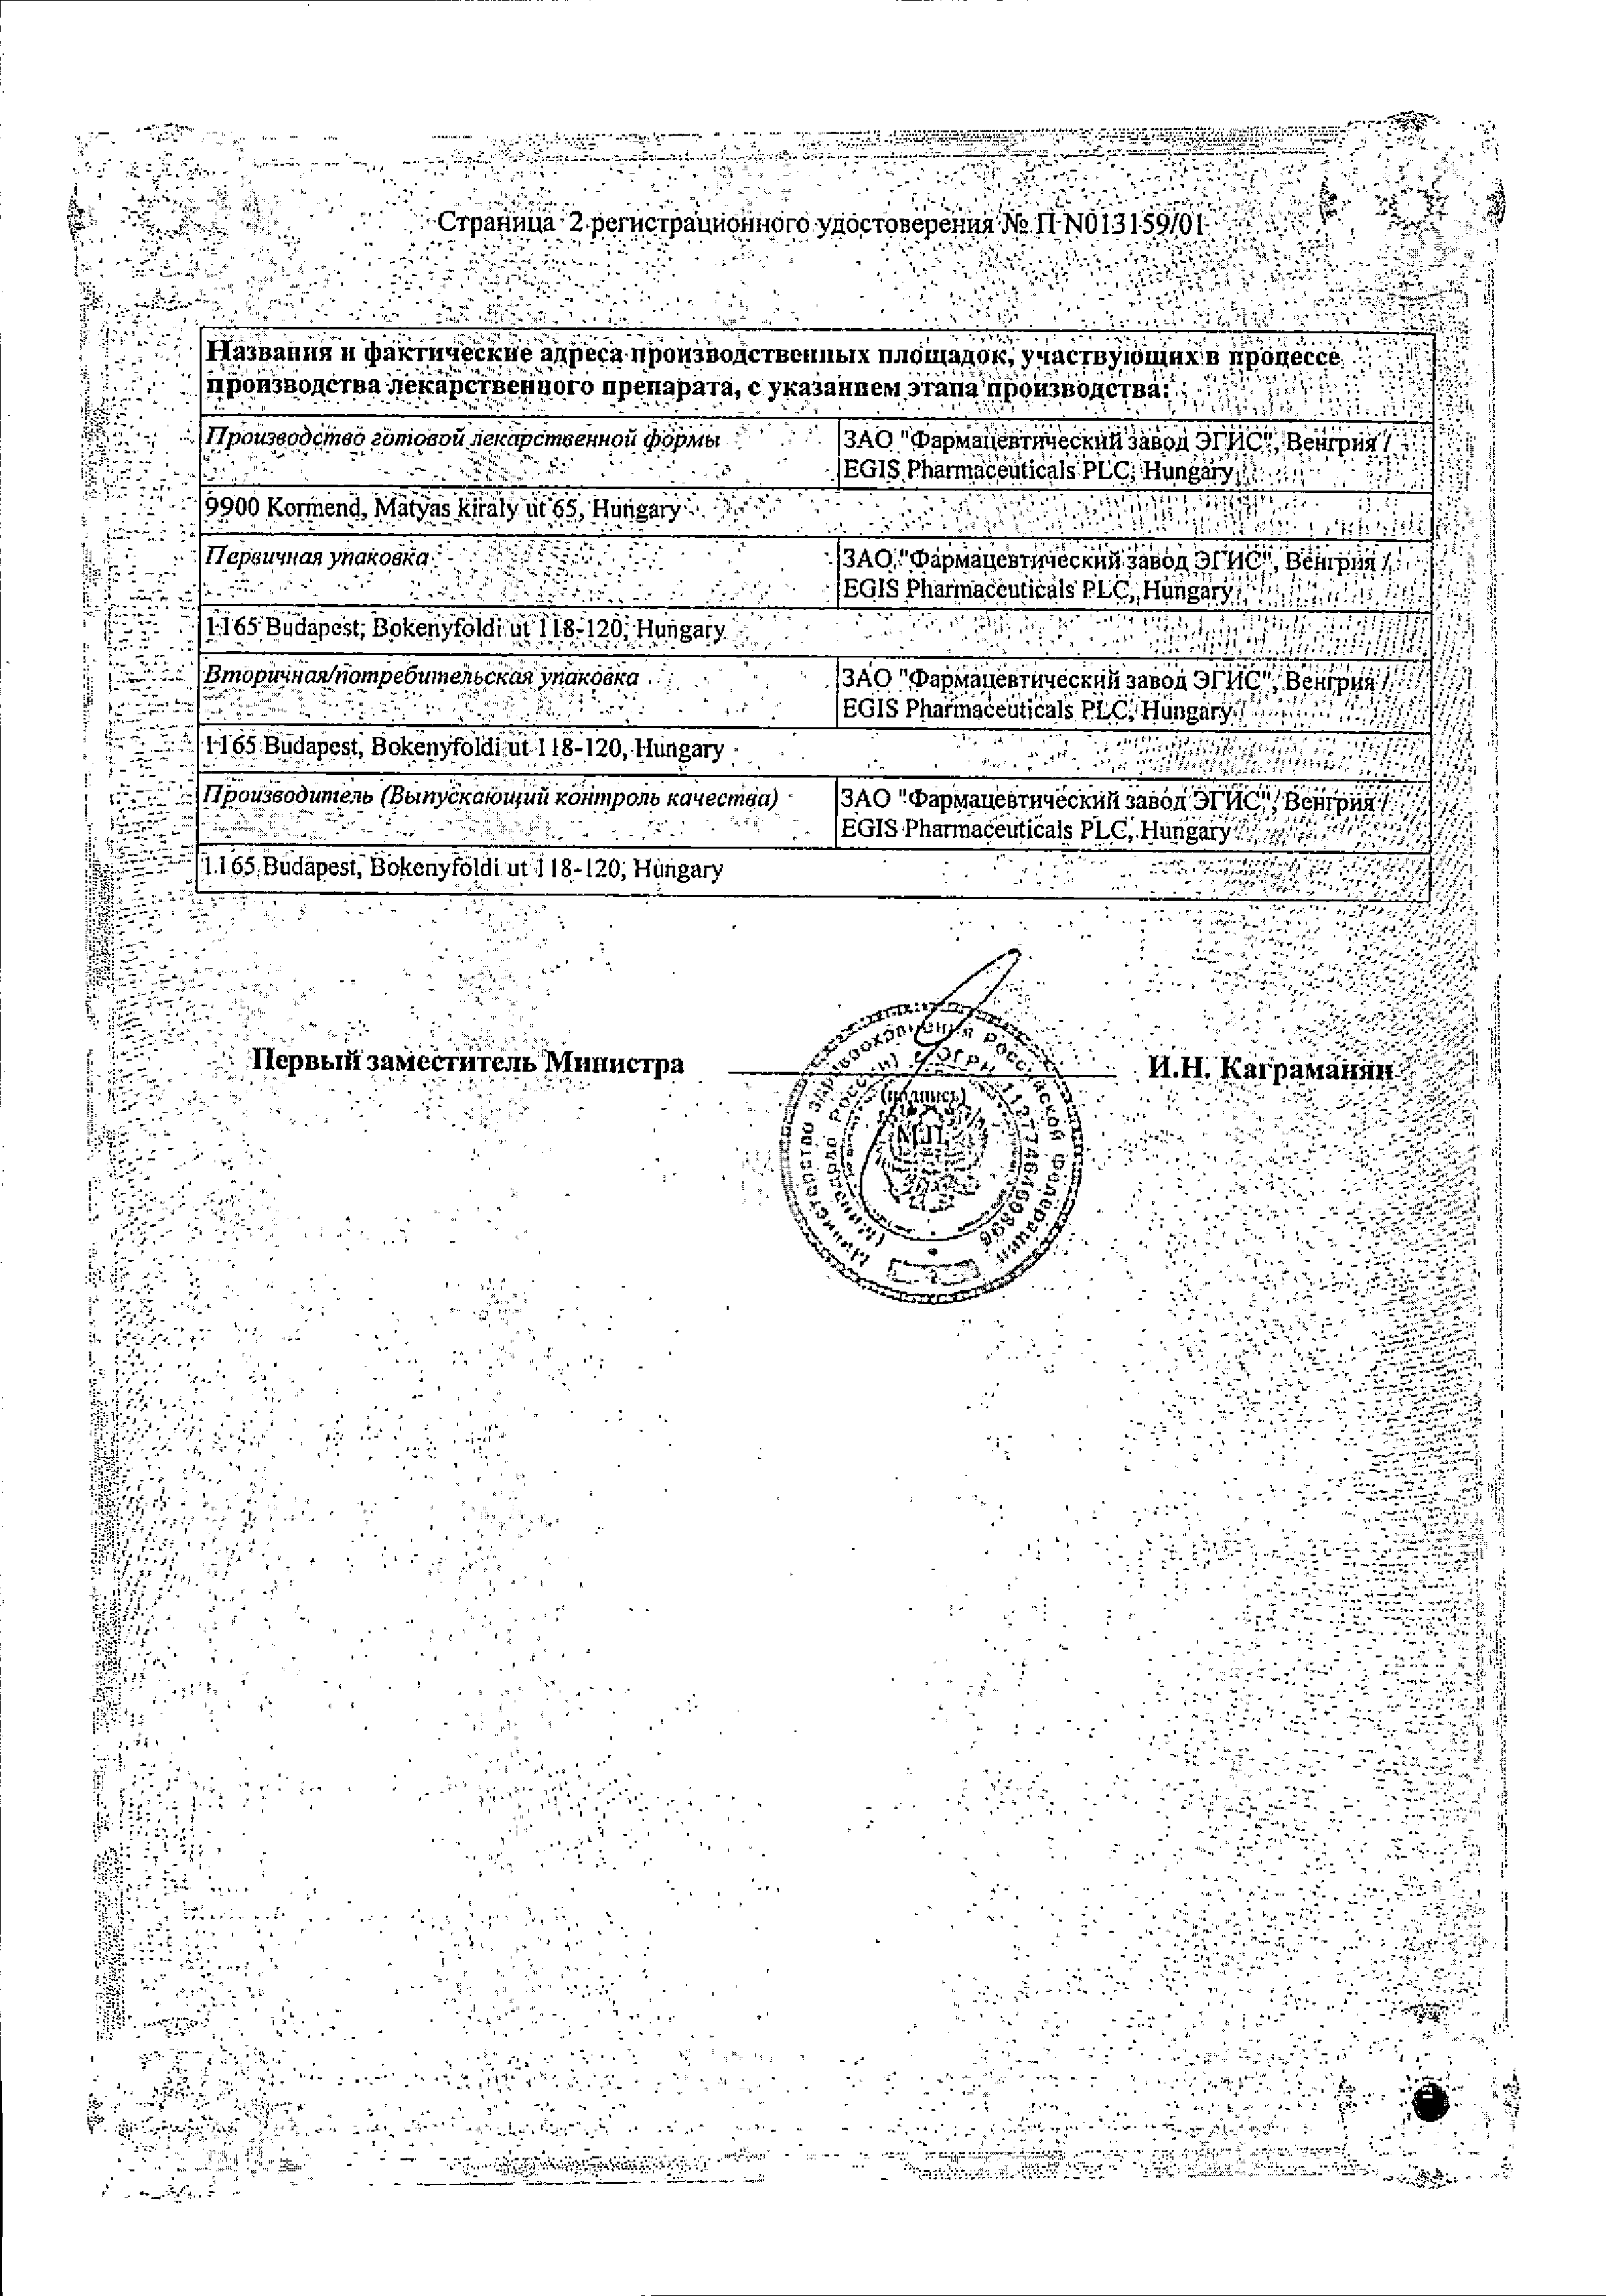 Спитомин сертификат